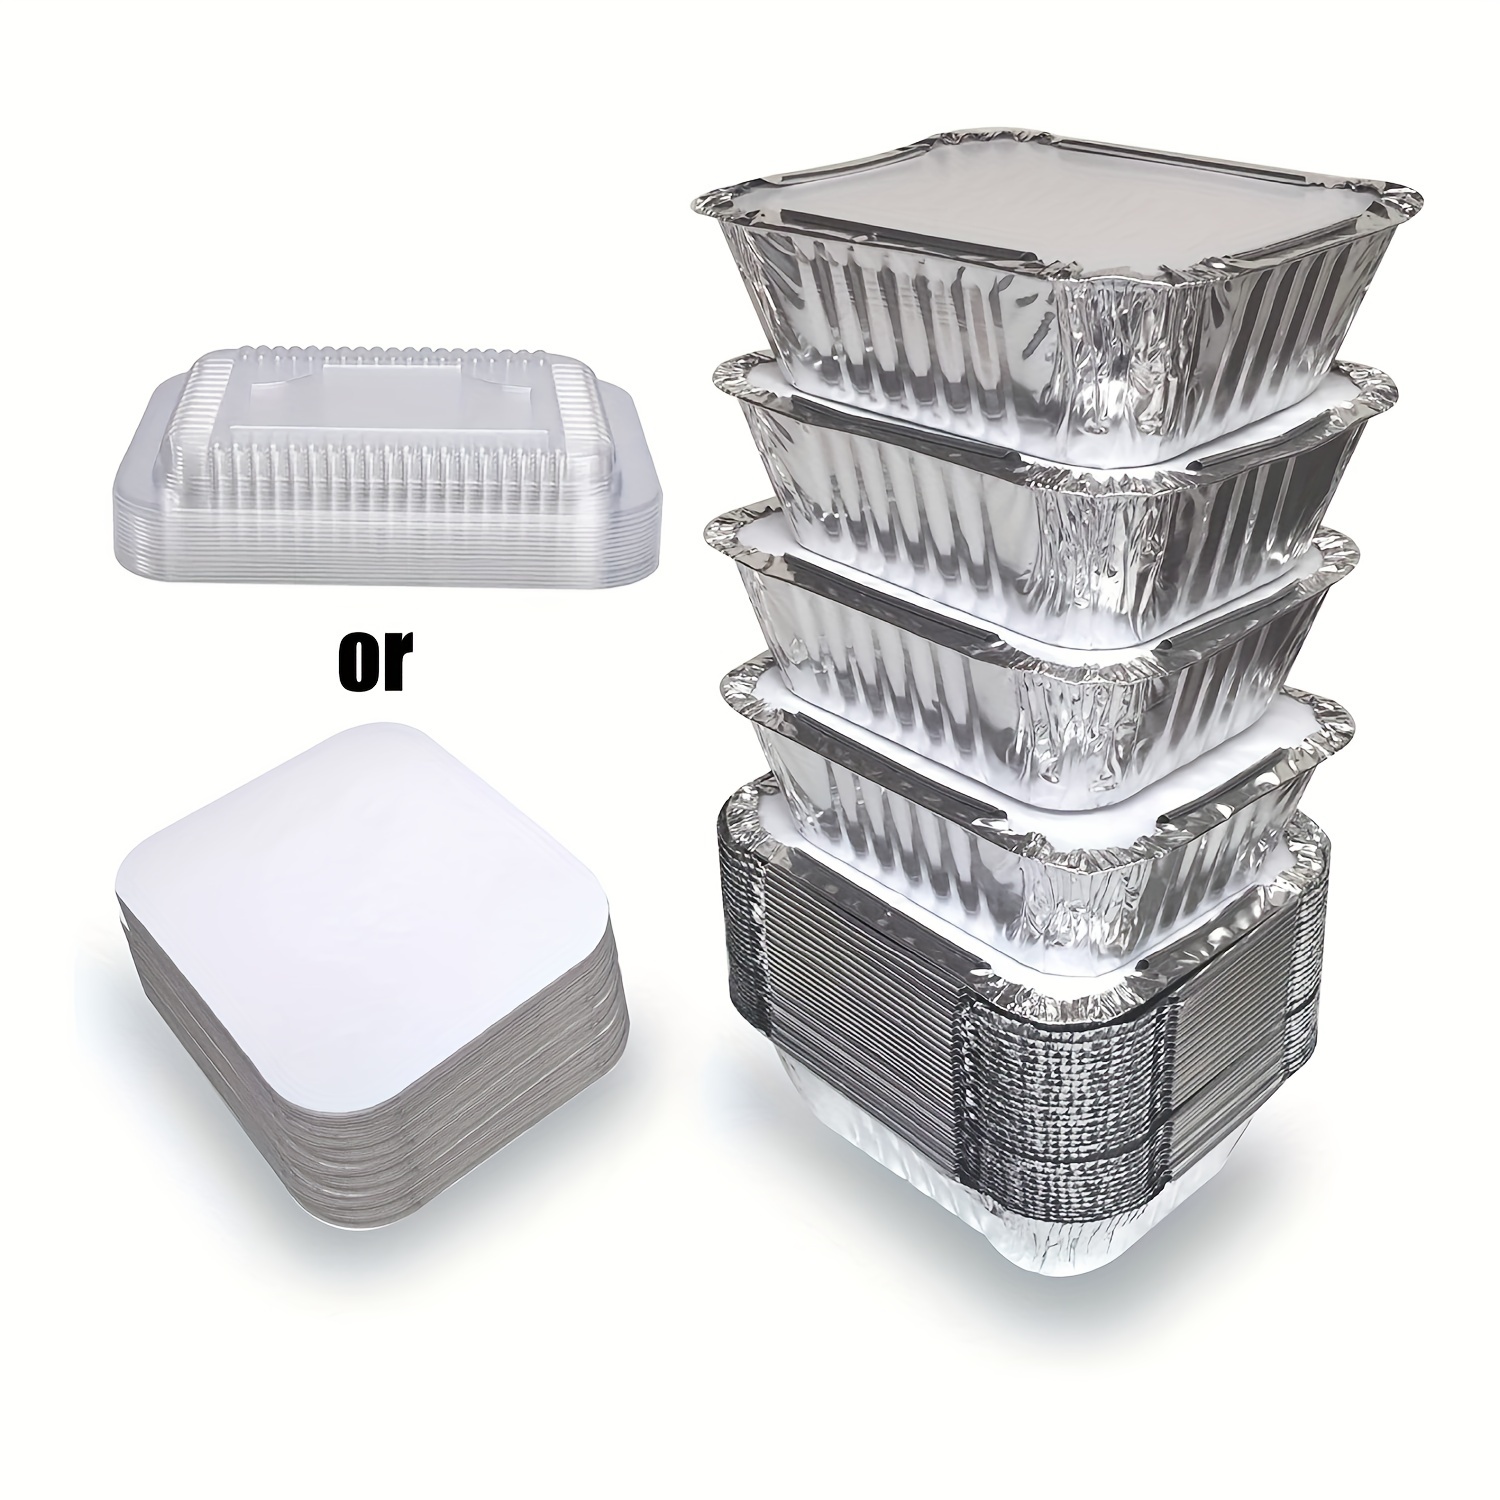 20pcs Aluminum Foil Food Containers